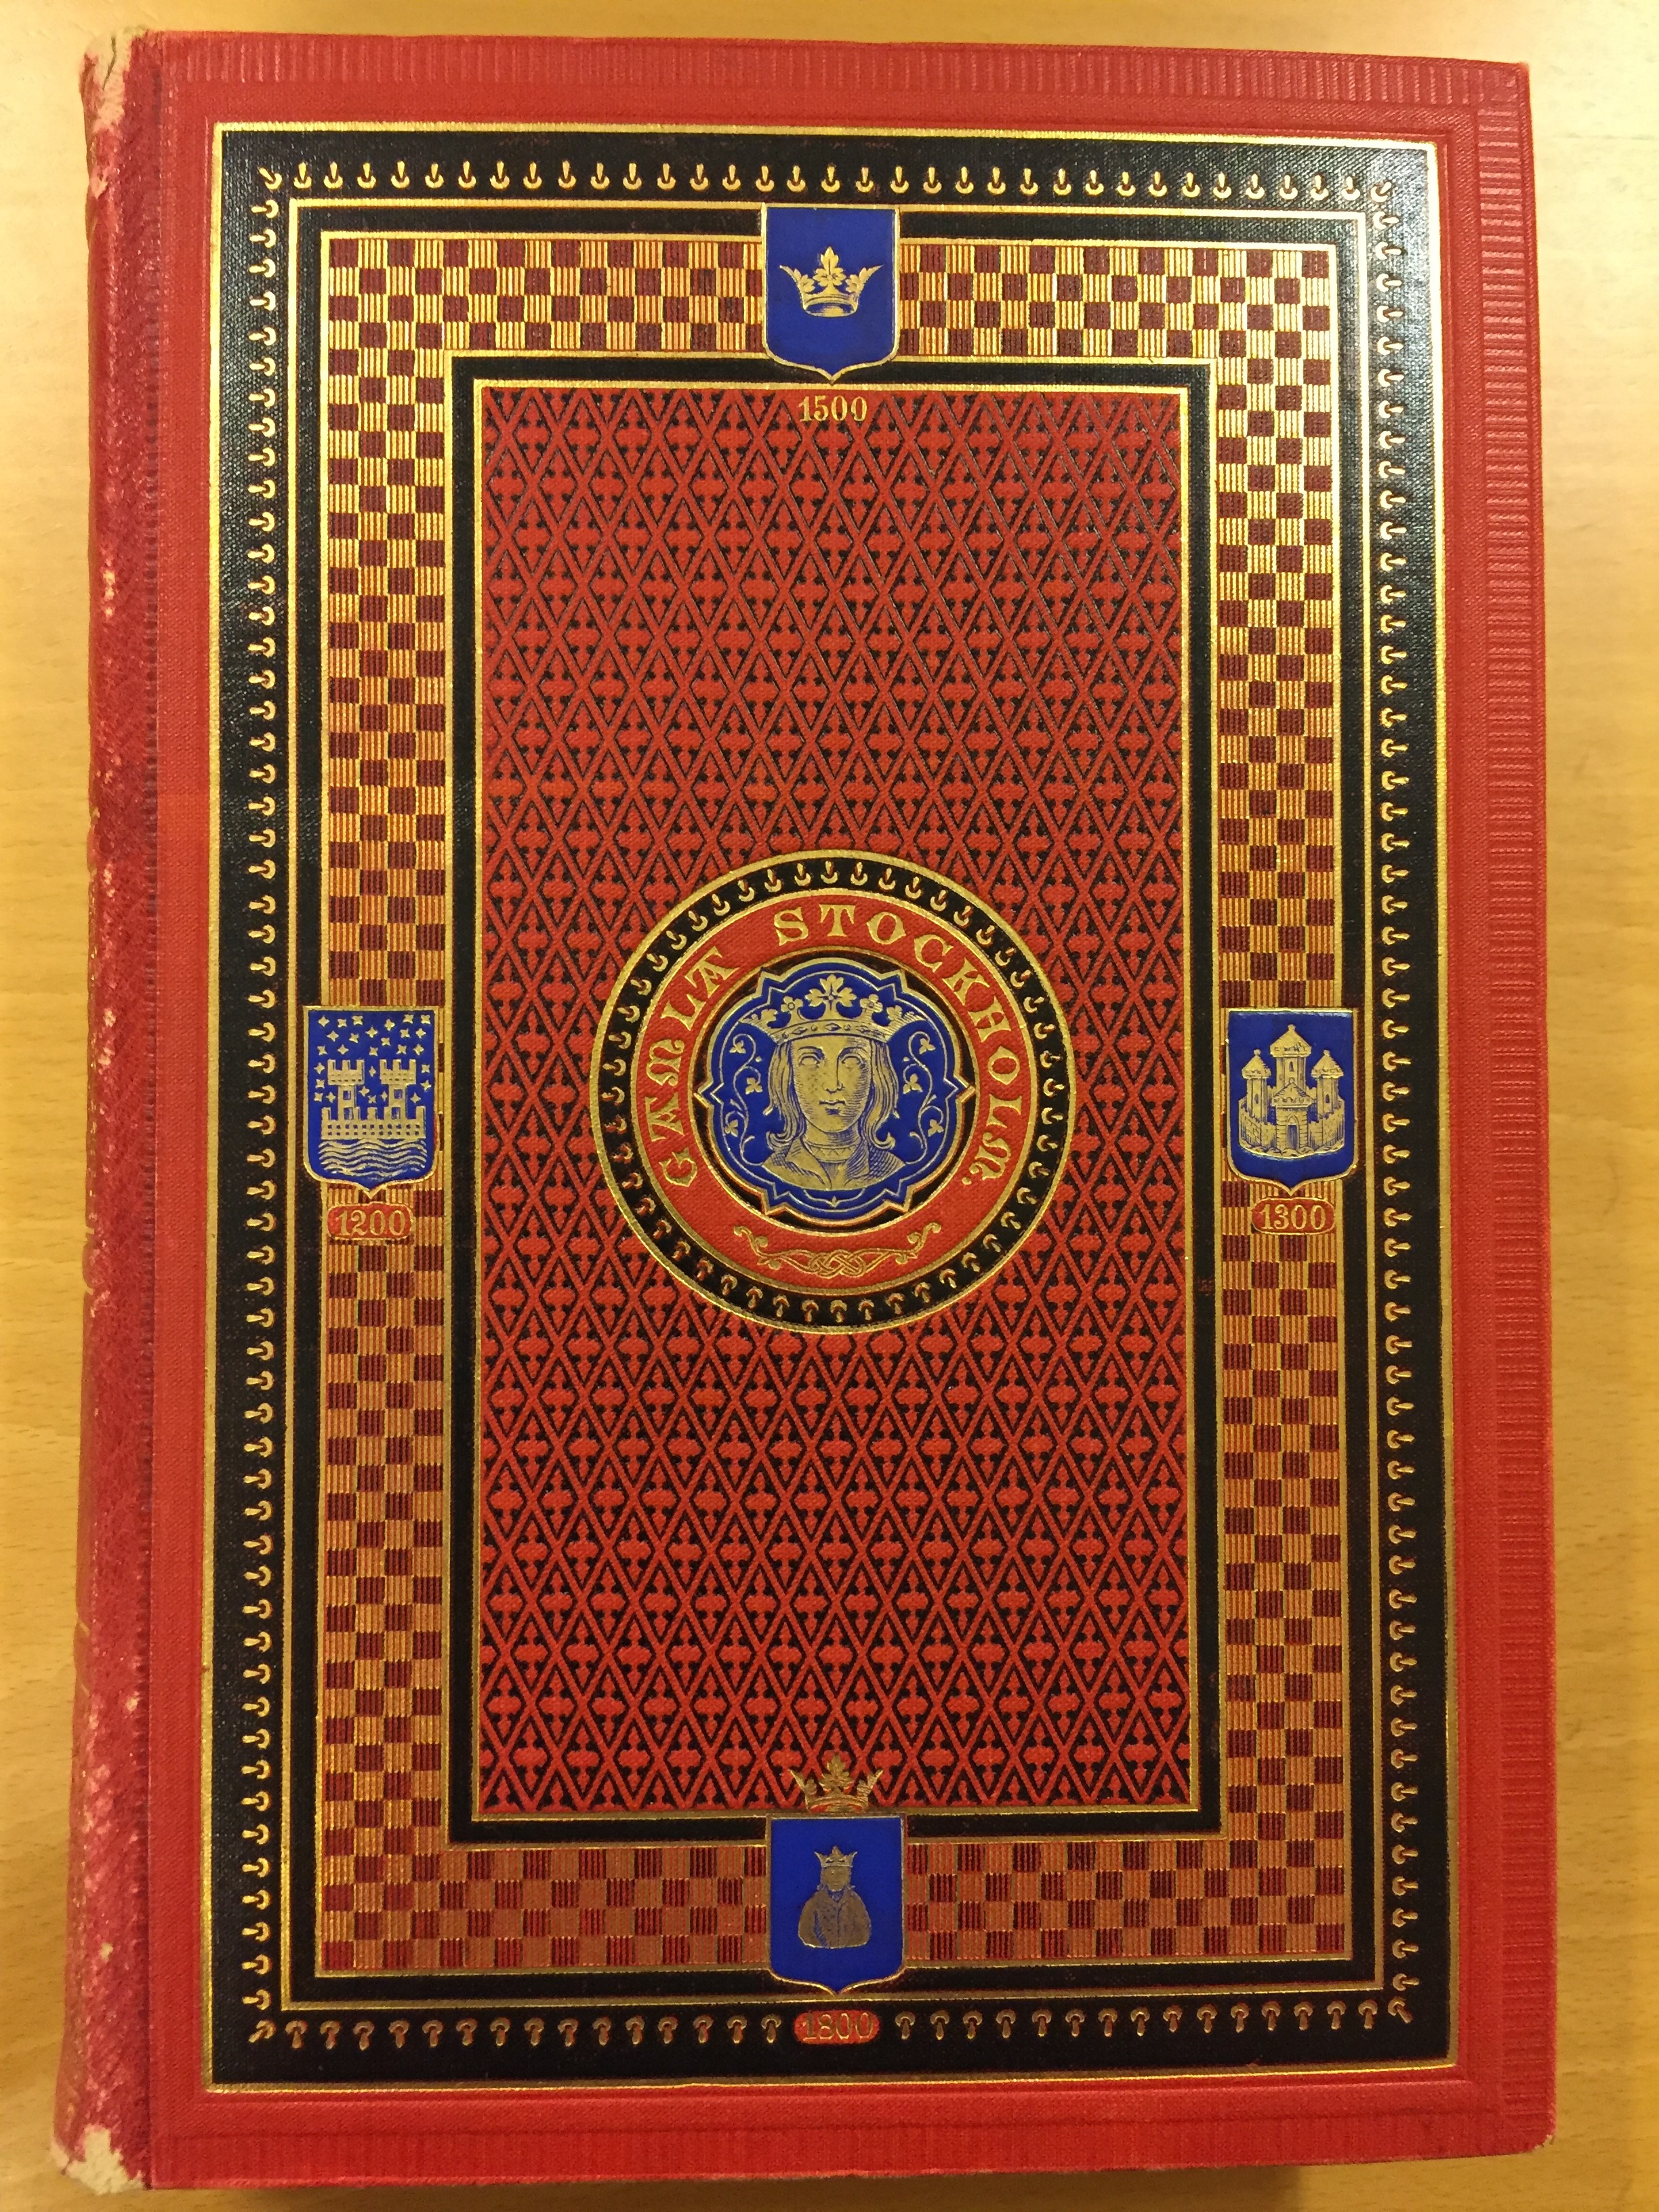 Bokomslag med rikt detaljerat mönster i rött, svart, blått och guld.